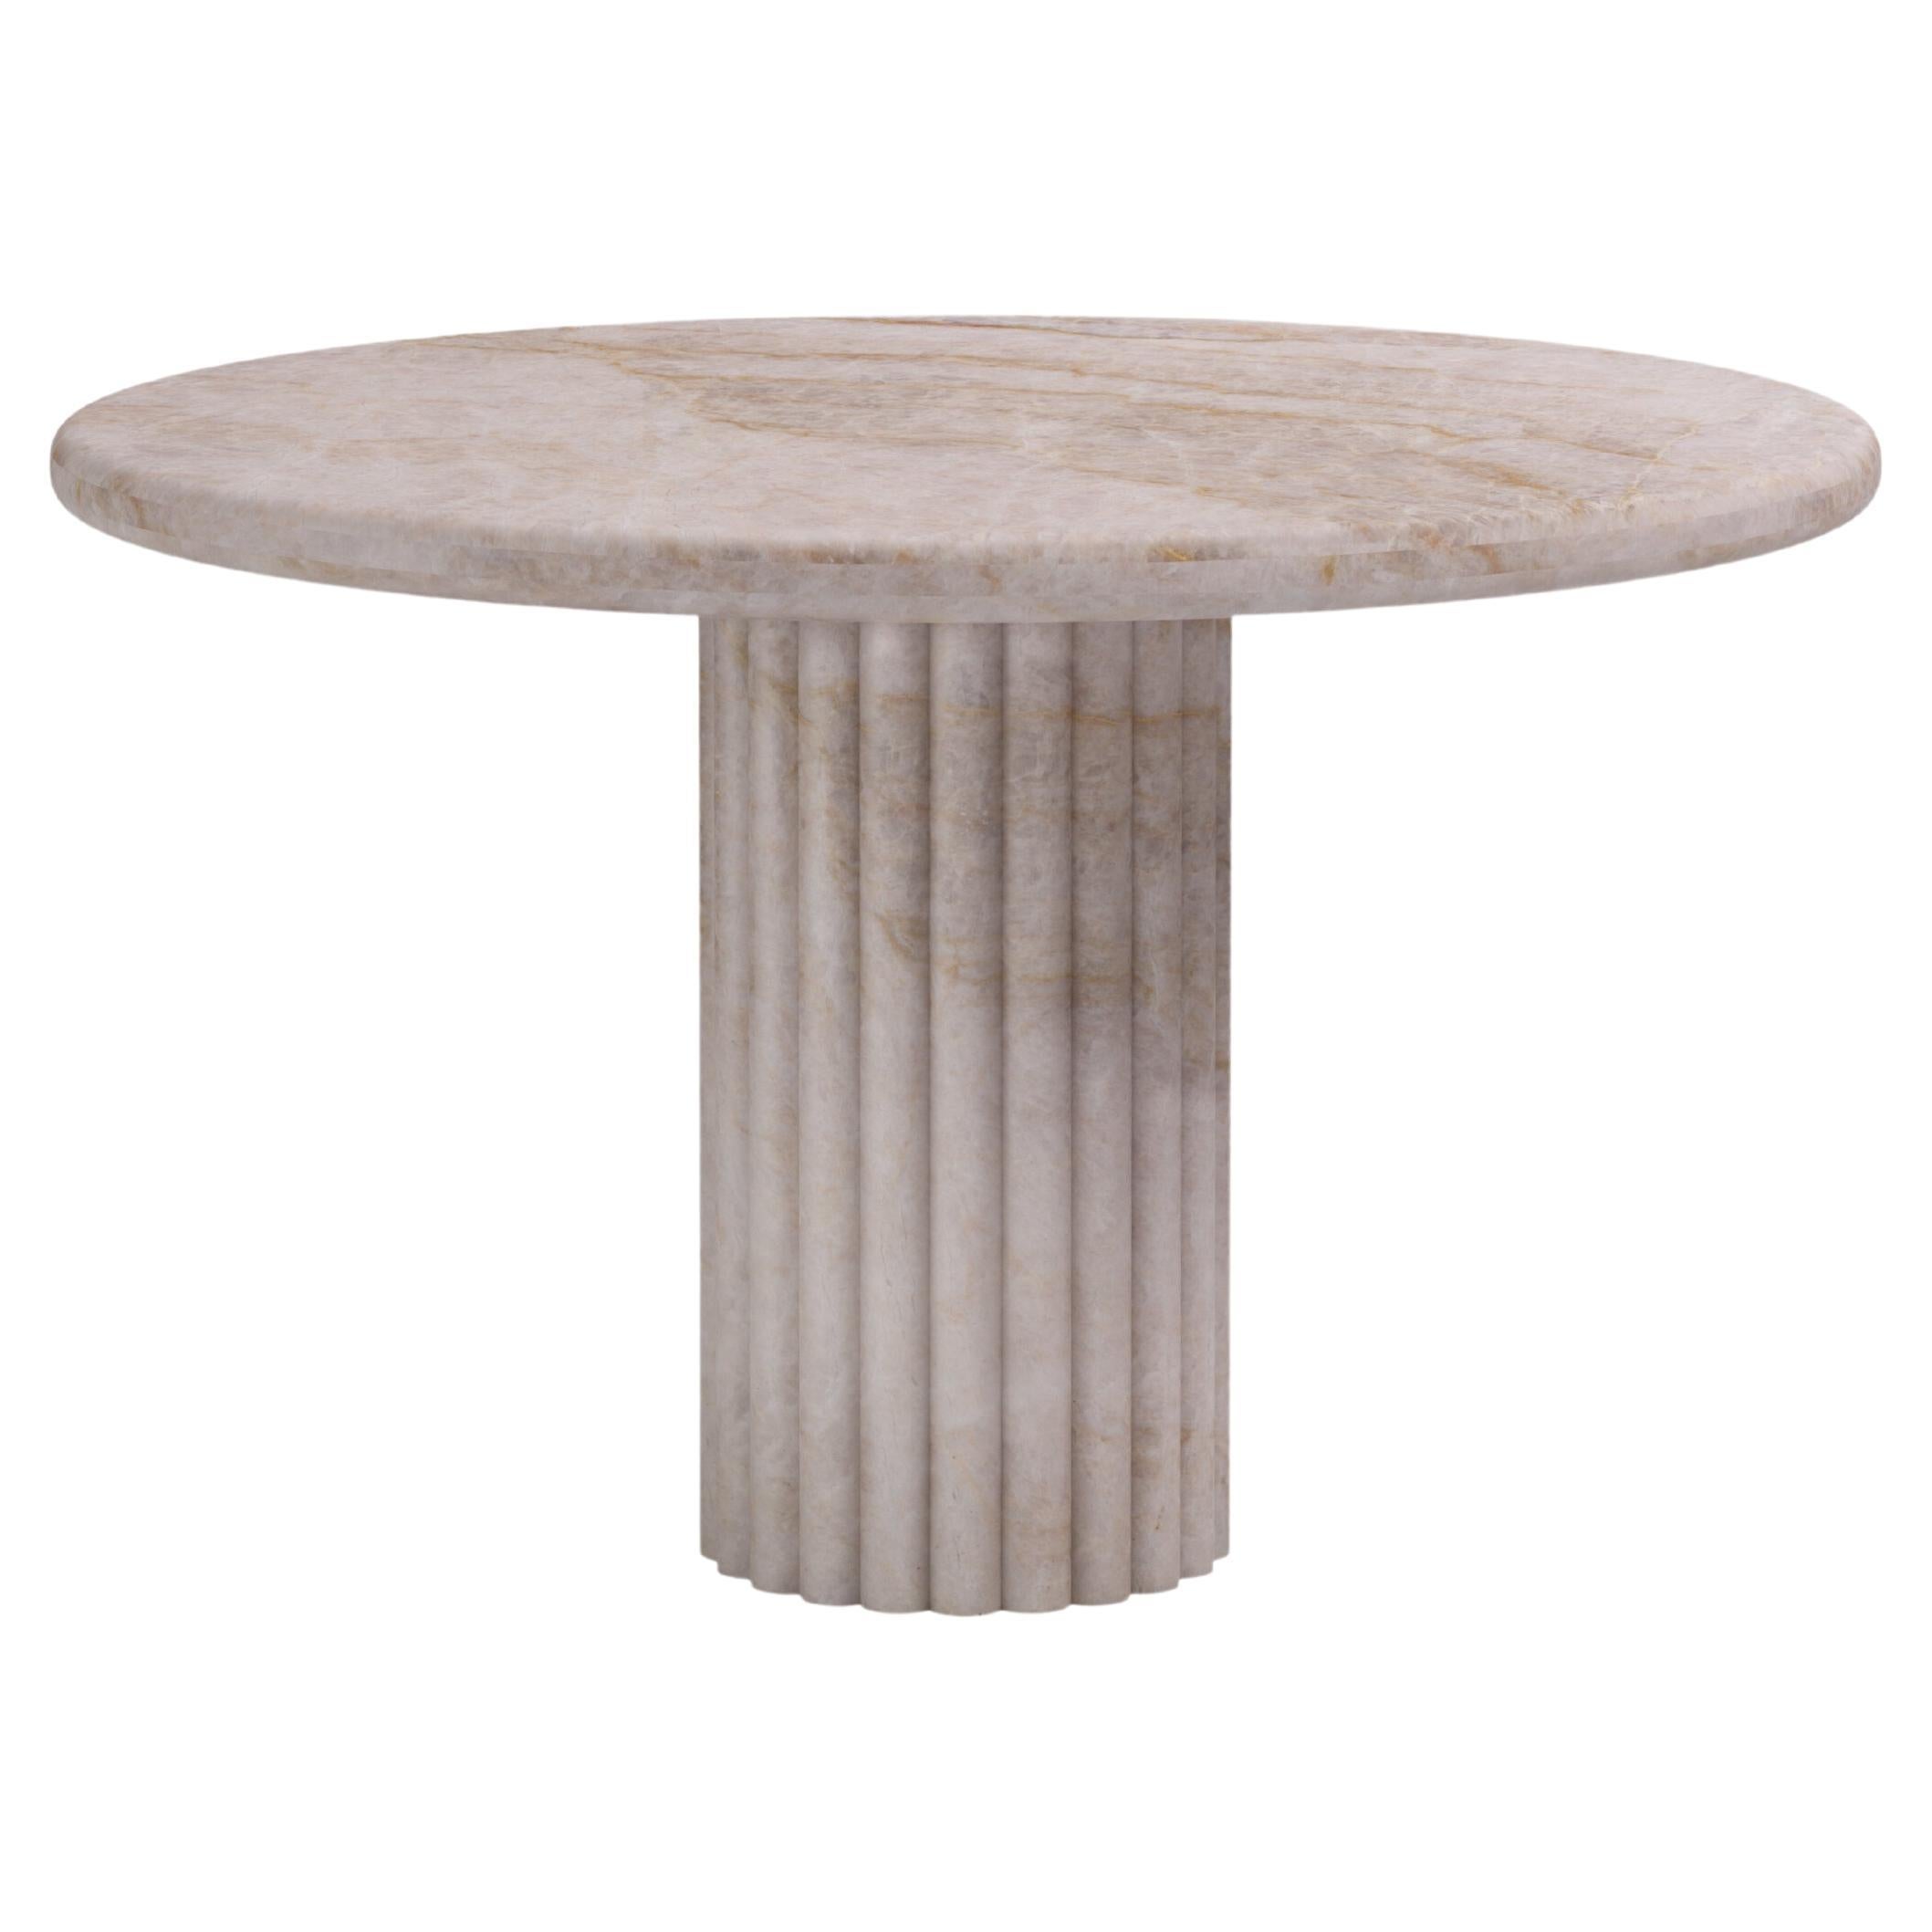 FORM(LA) Fluta Round Dining Table 42”L x 42”W x 30”H Taj Mahal Quartzite For Sale